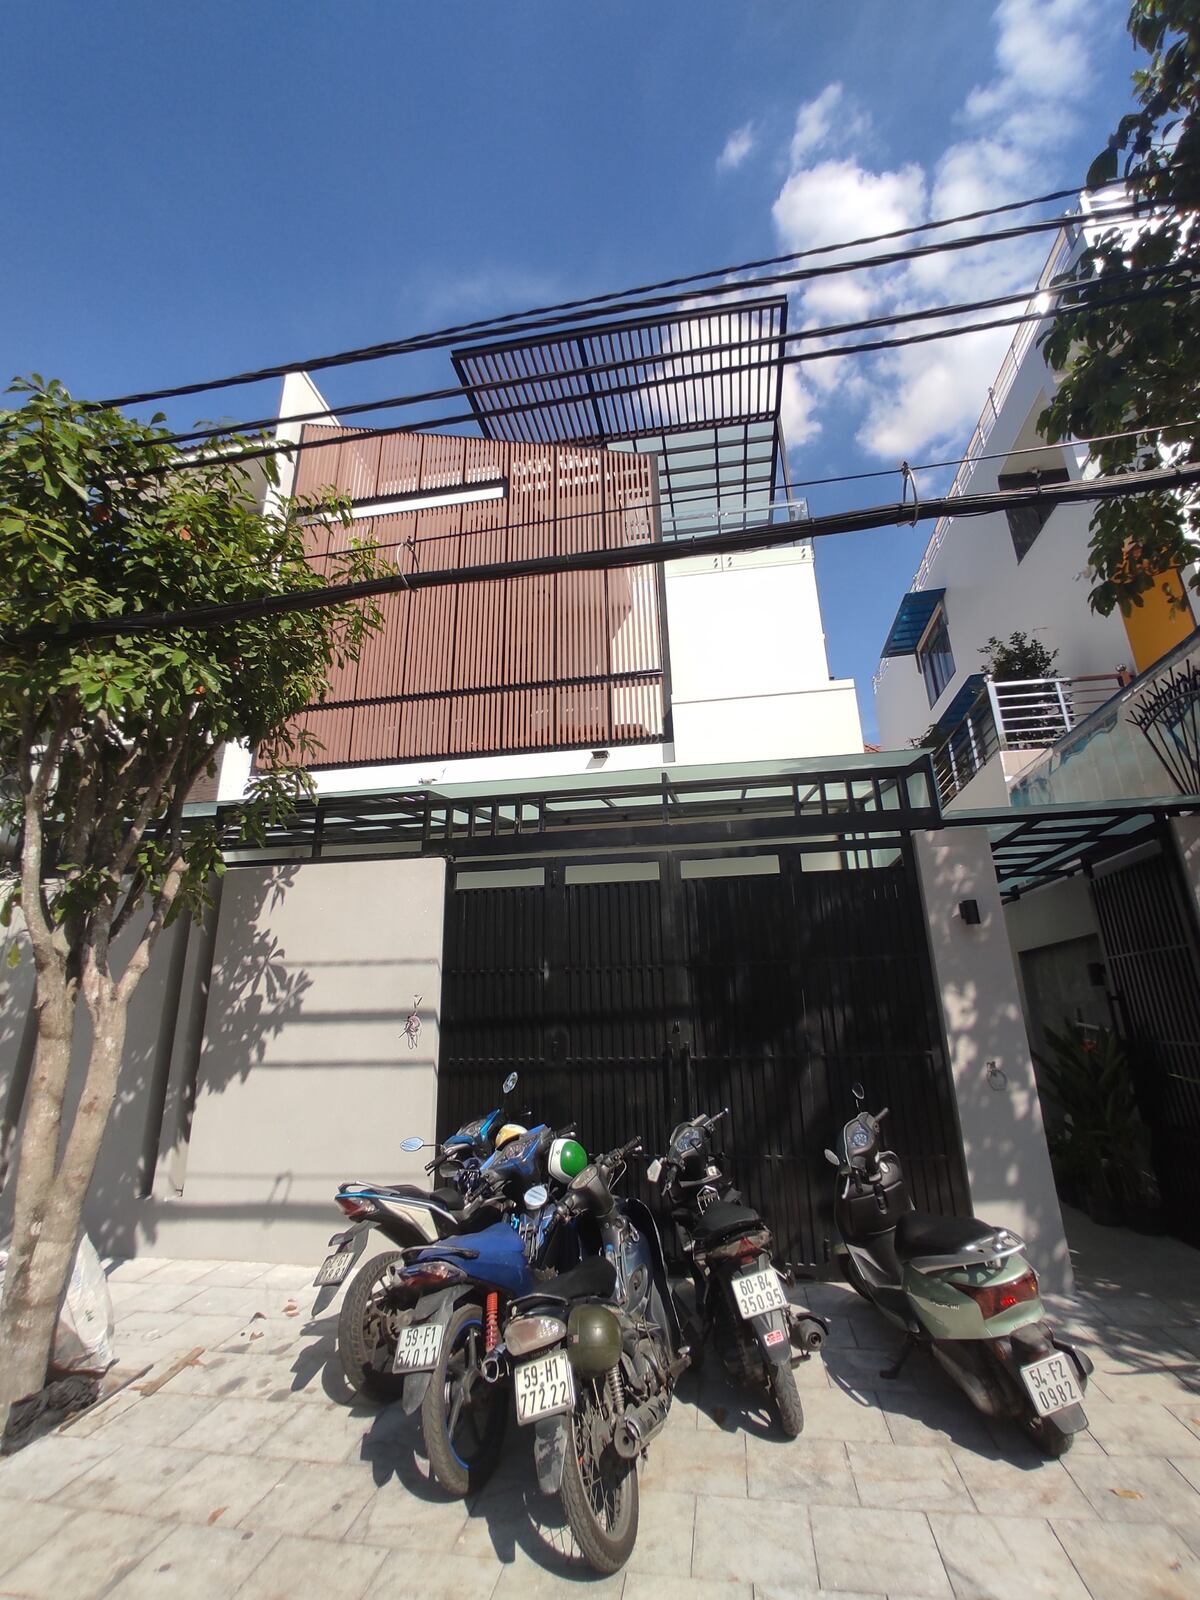 Thi công sắp hoàn thiện cải tạo nhà phố Bình Tân